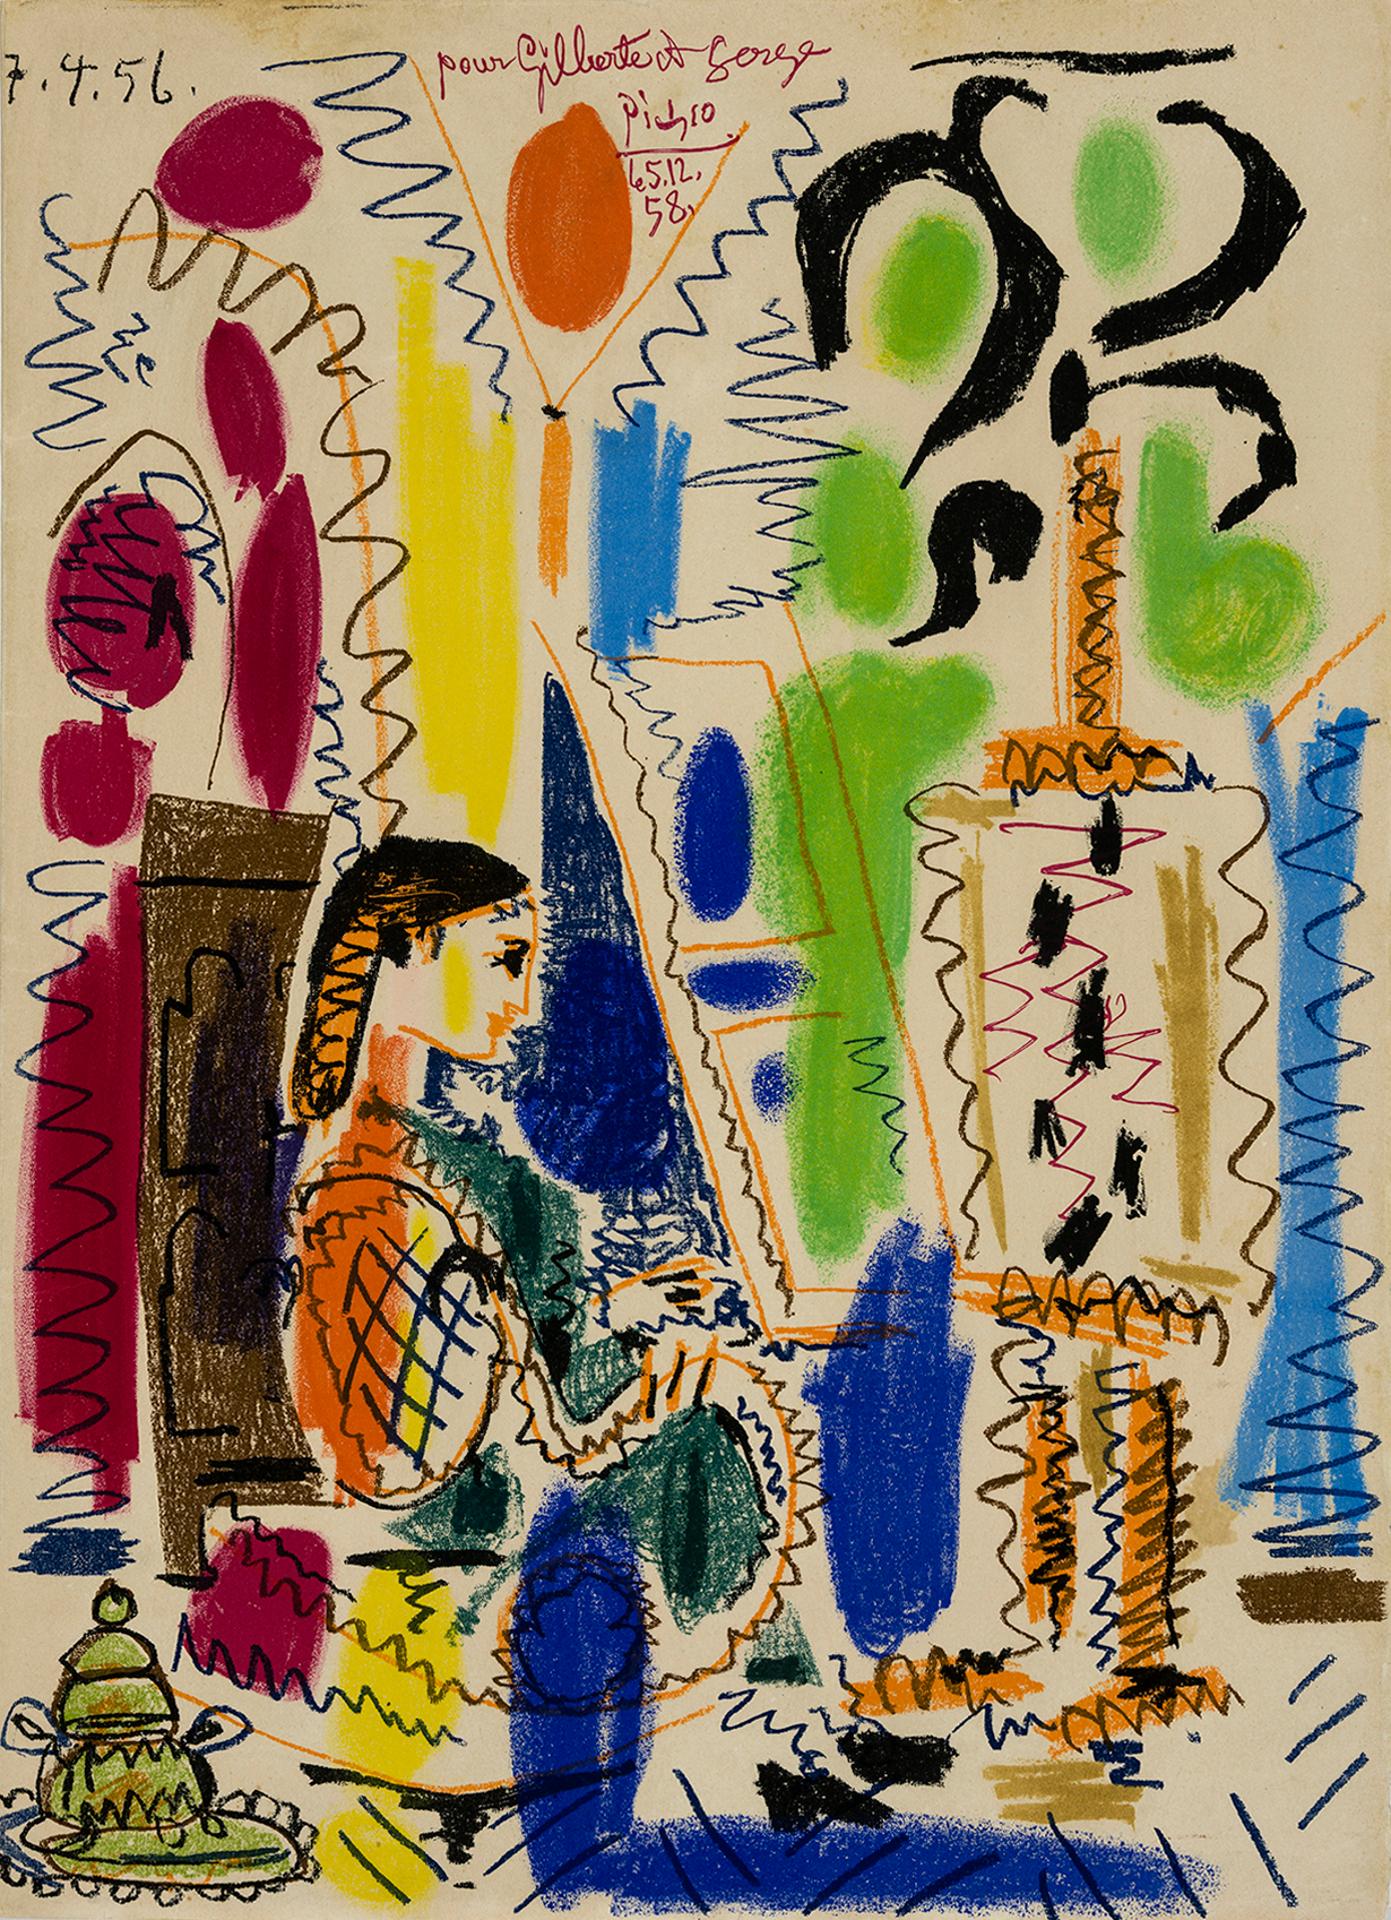 Pablo Ruiz Picasso (1881-1973) - L'atelier de Cannes, 1958